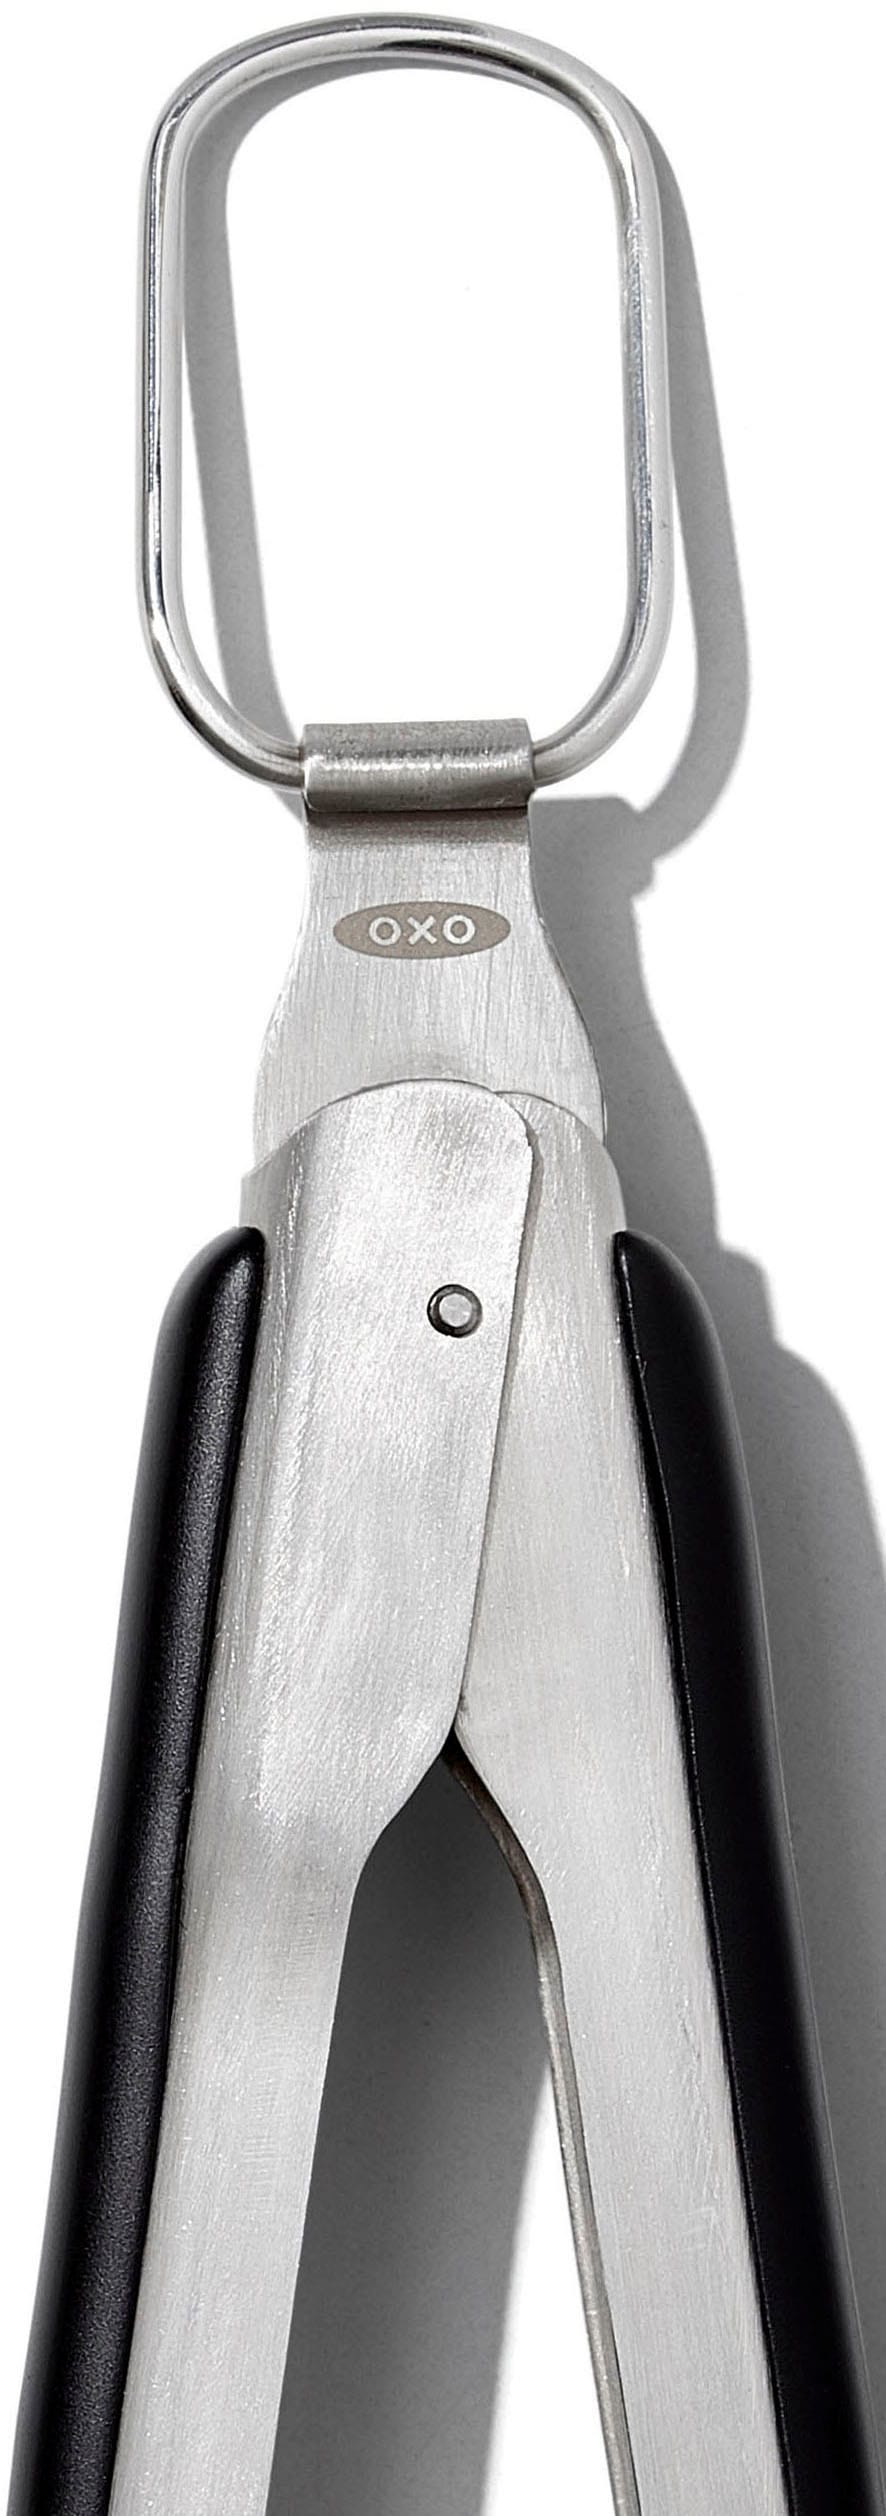 OXO Good Grips Grillzange, mit integriertem Flaschenöffner, Edelstahl